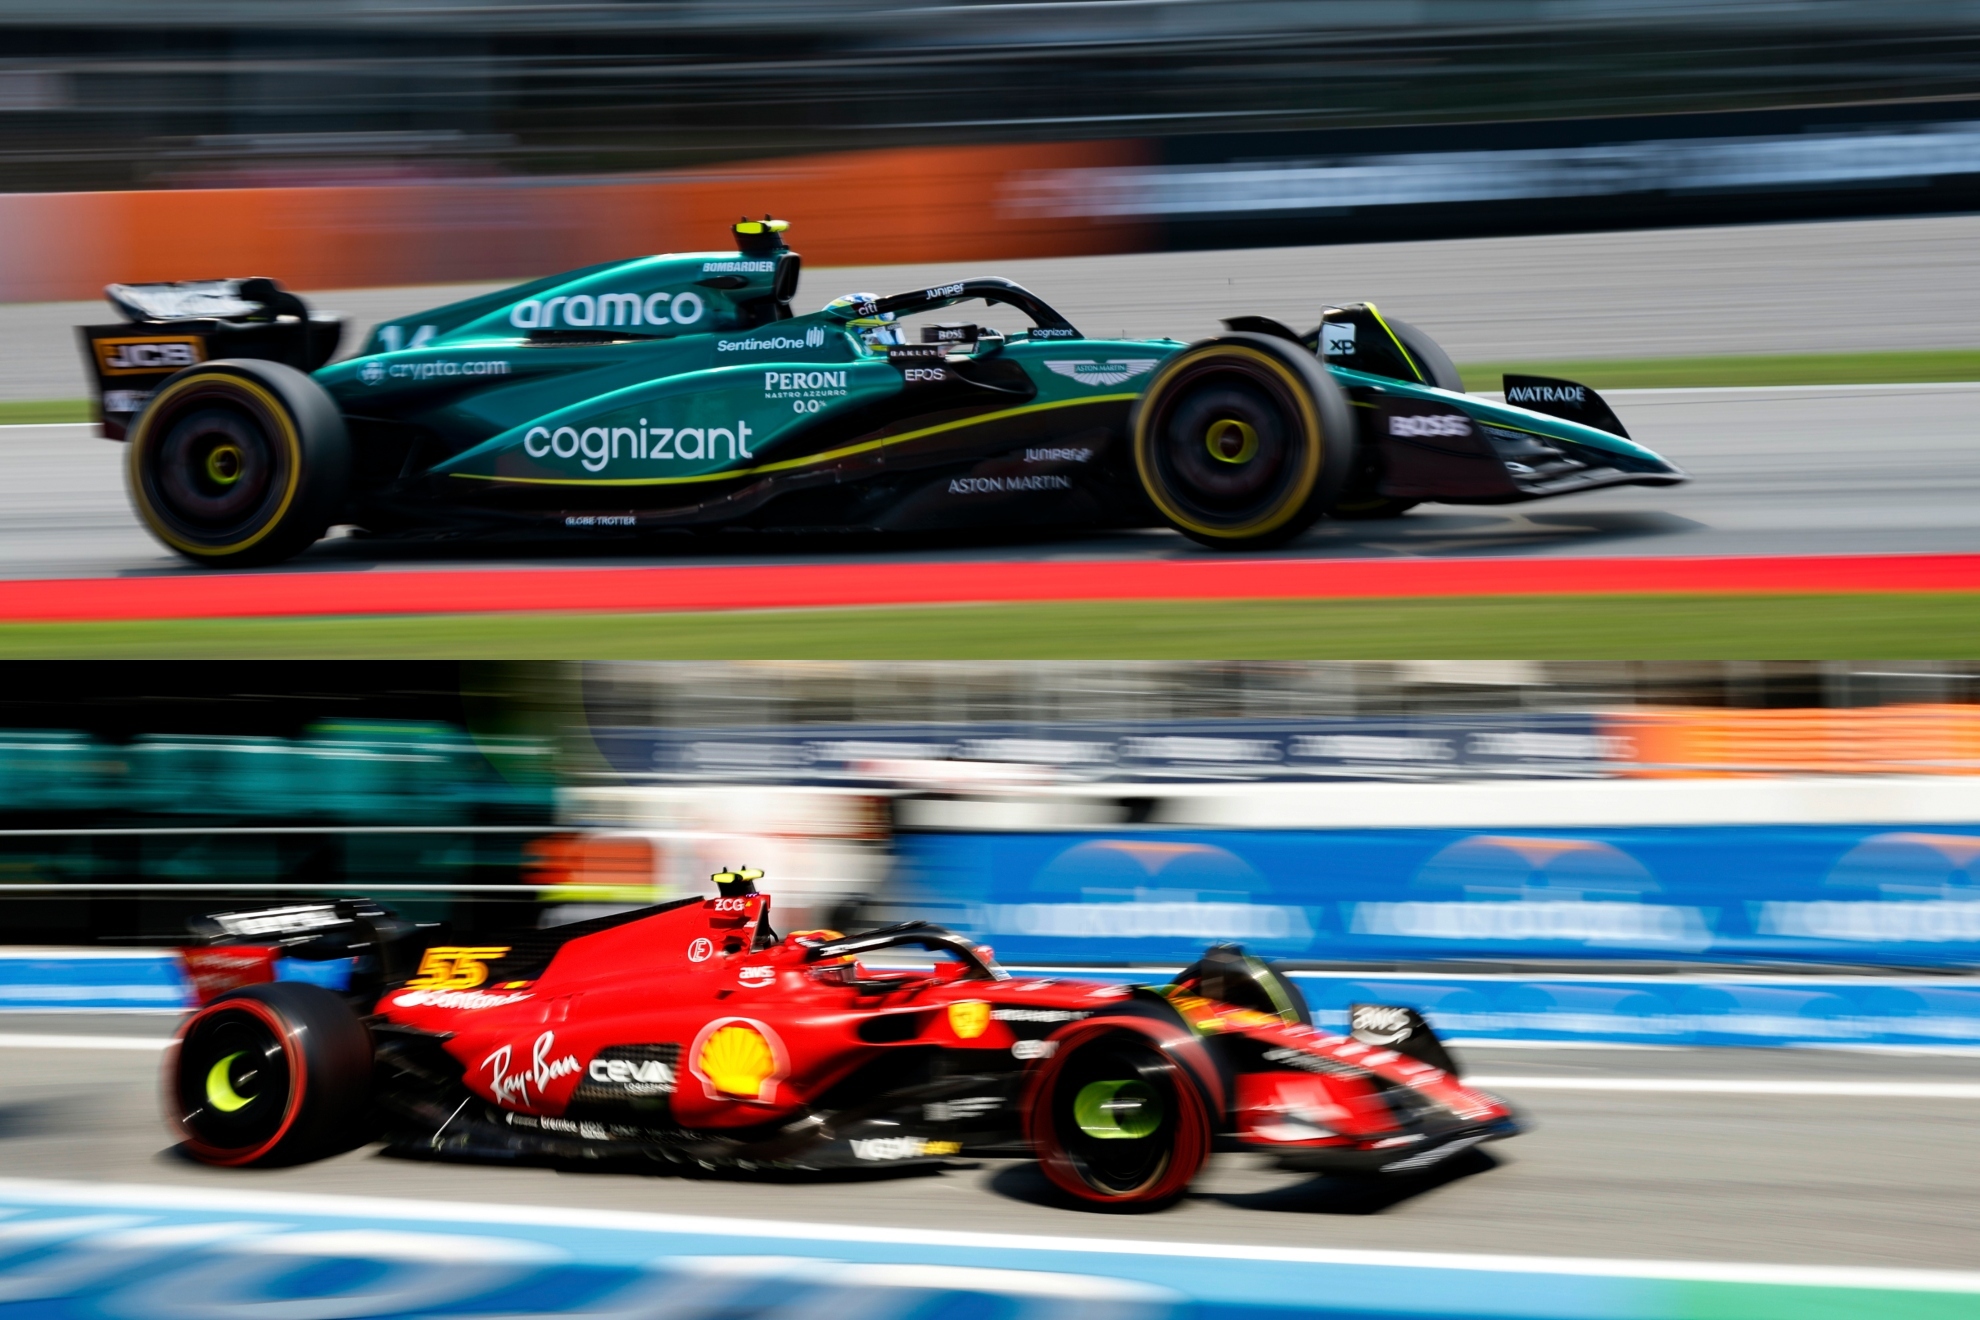 Clasificaci�n y parrilla del Gran Premio de Espa�a de F�rmula 1: Verstappen pole, Sainz 2� y Fernando Alonso 9�